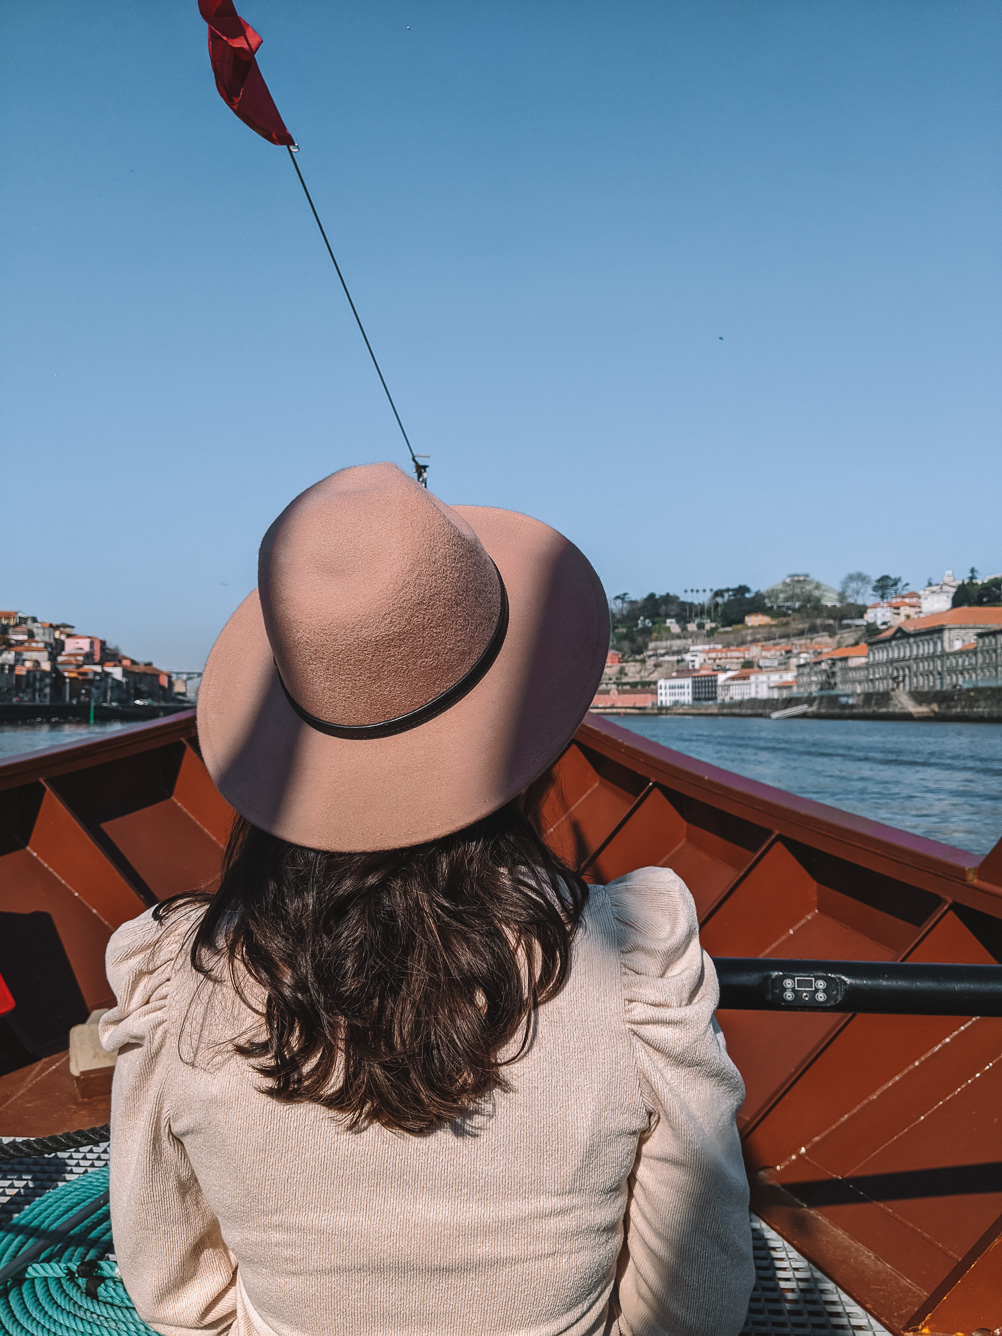 Faire une croisière sur le fleuve Douro à Porto